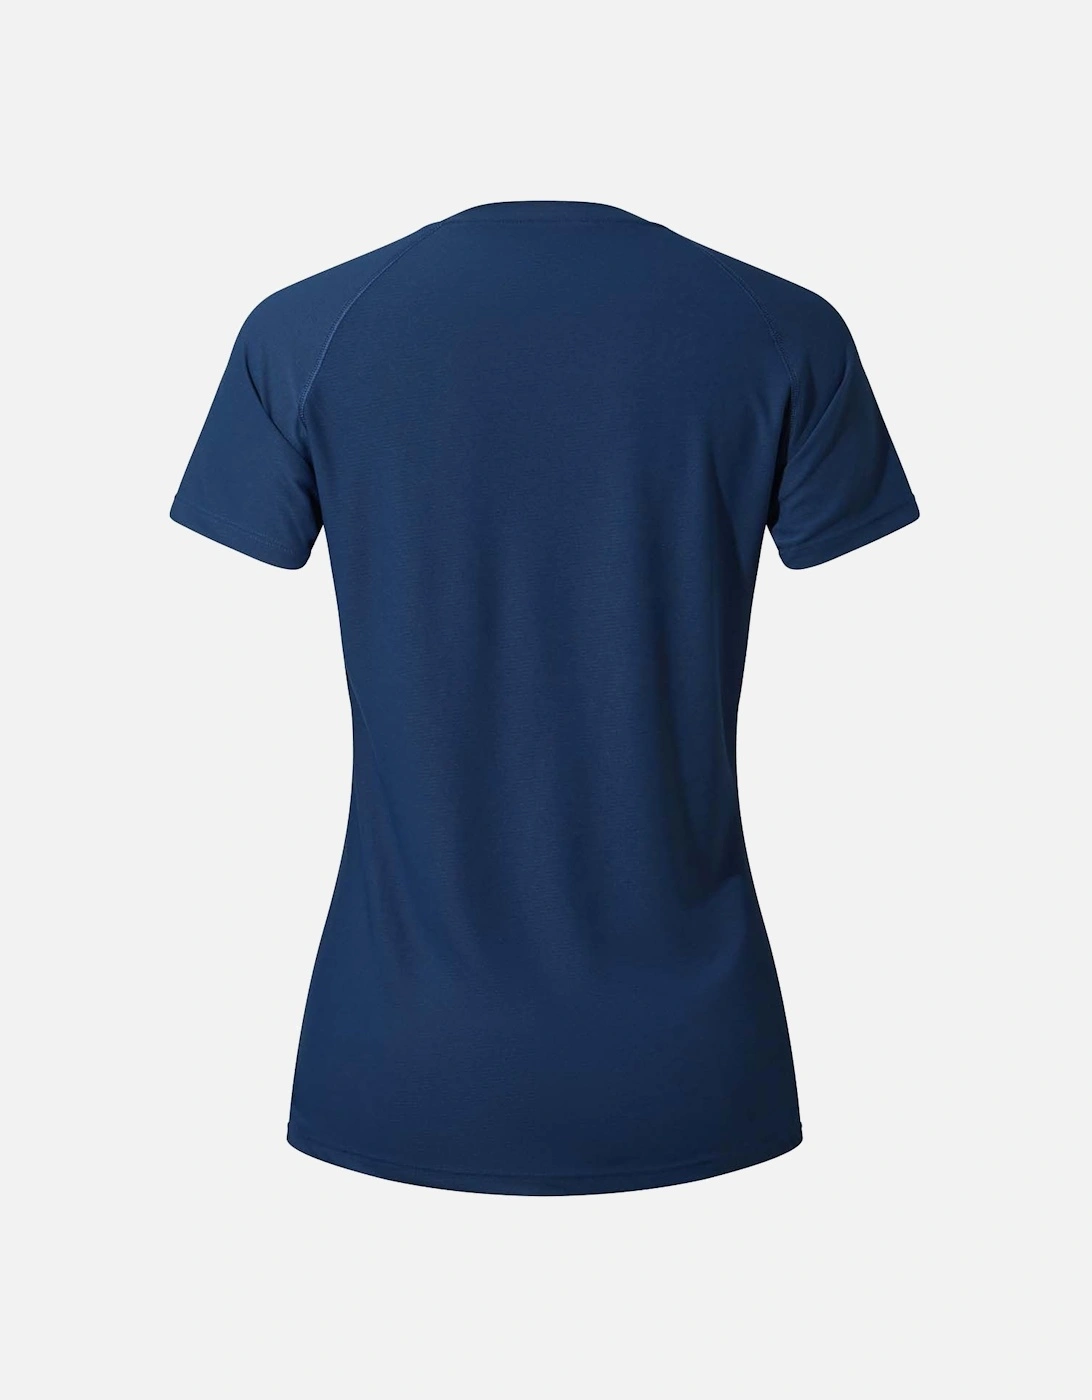 Womens 24/7 Short Sleeve Tech Baselayer T-Shirt